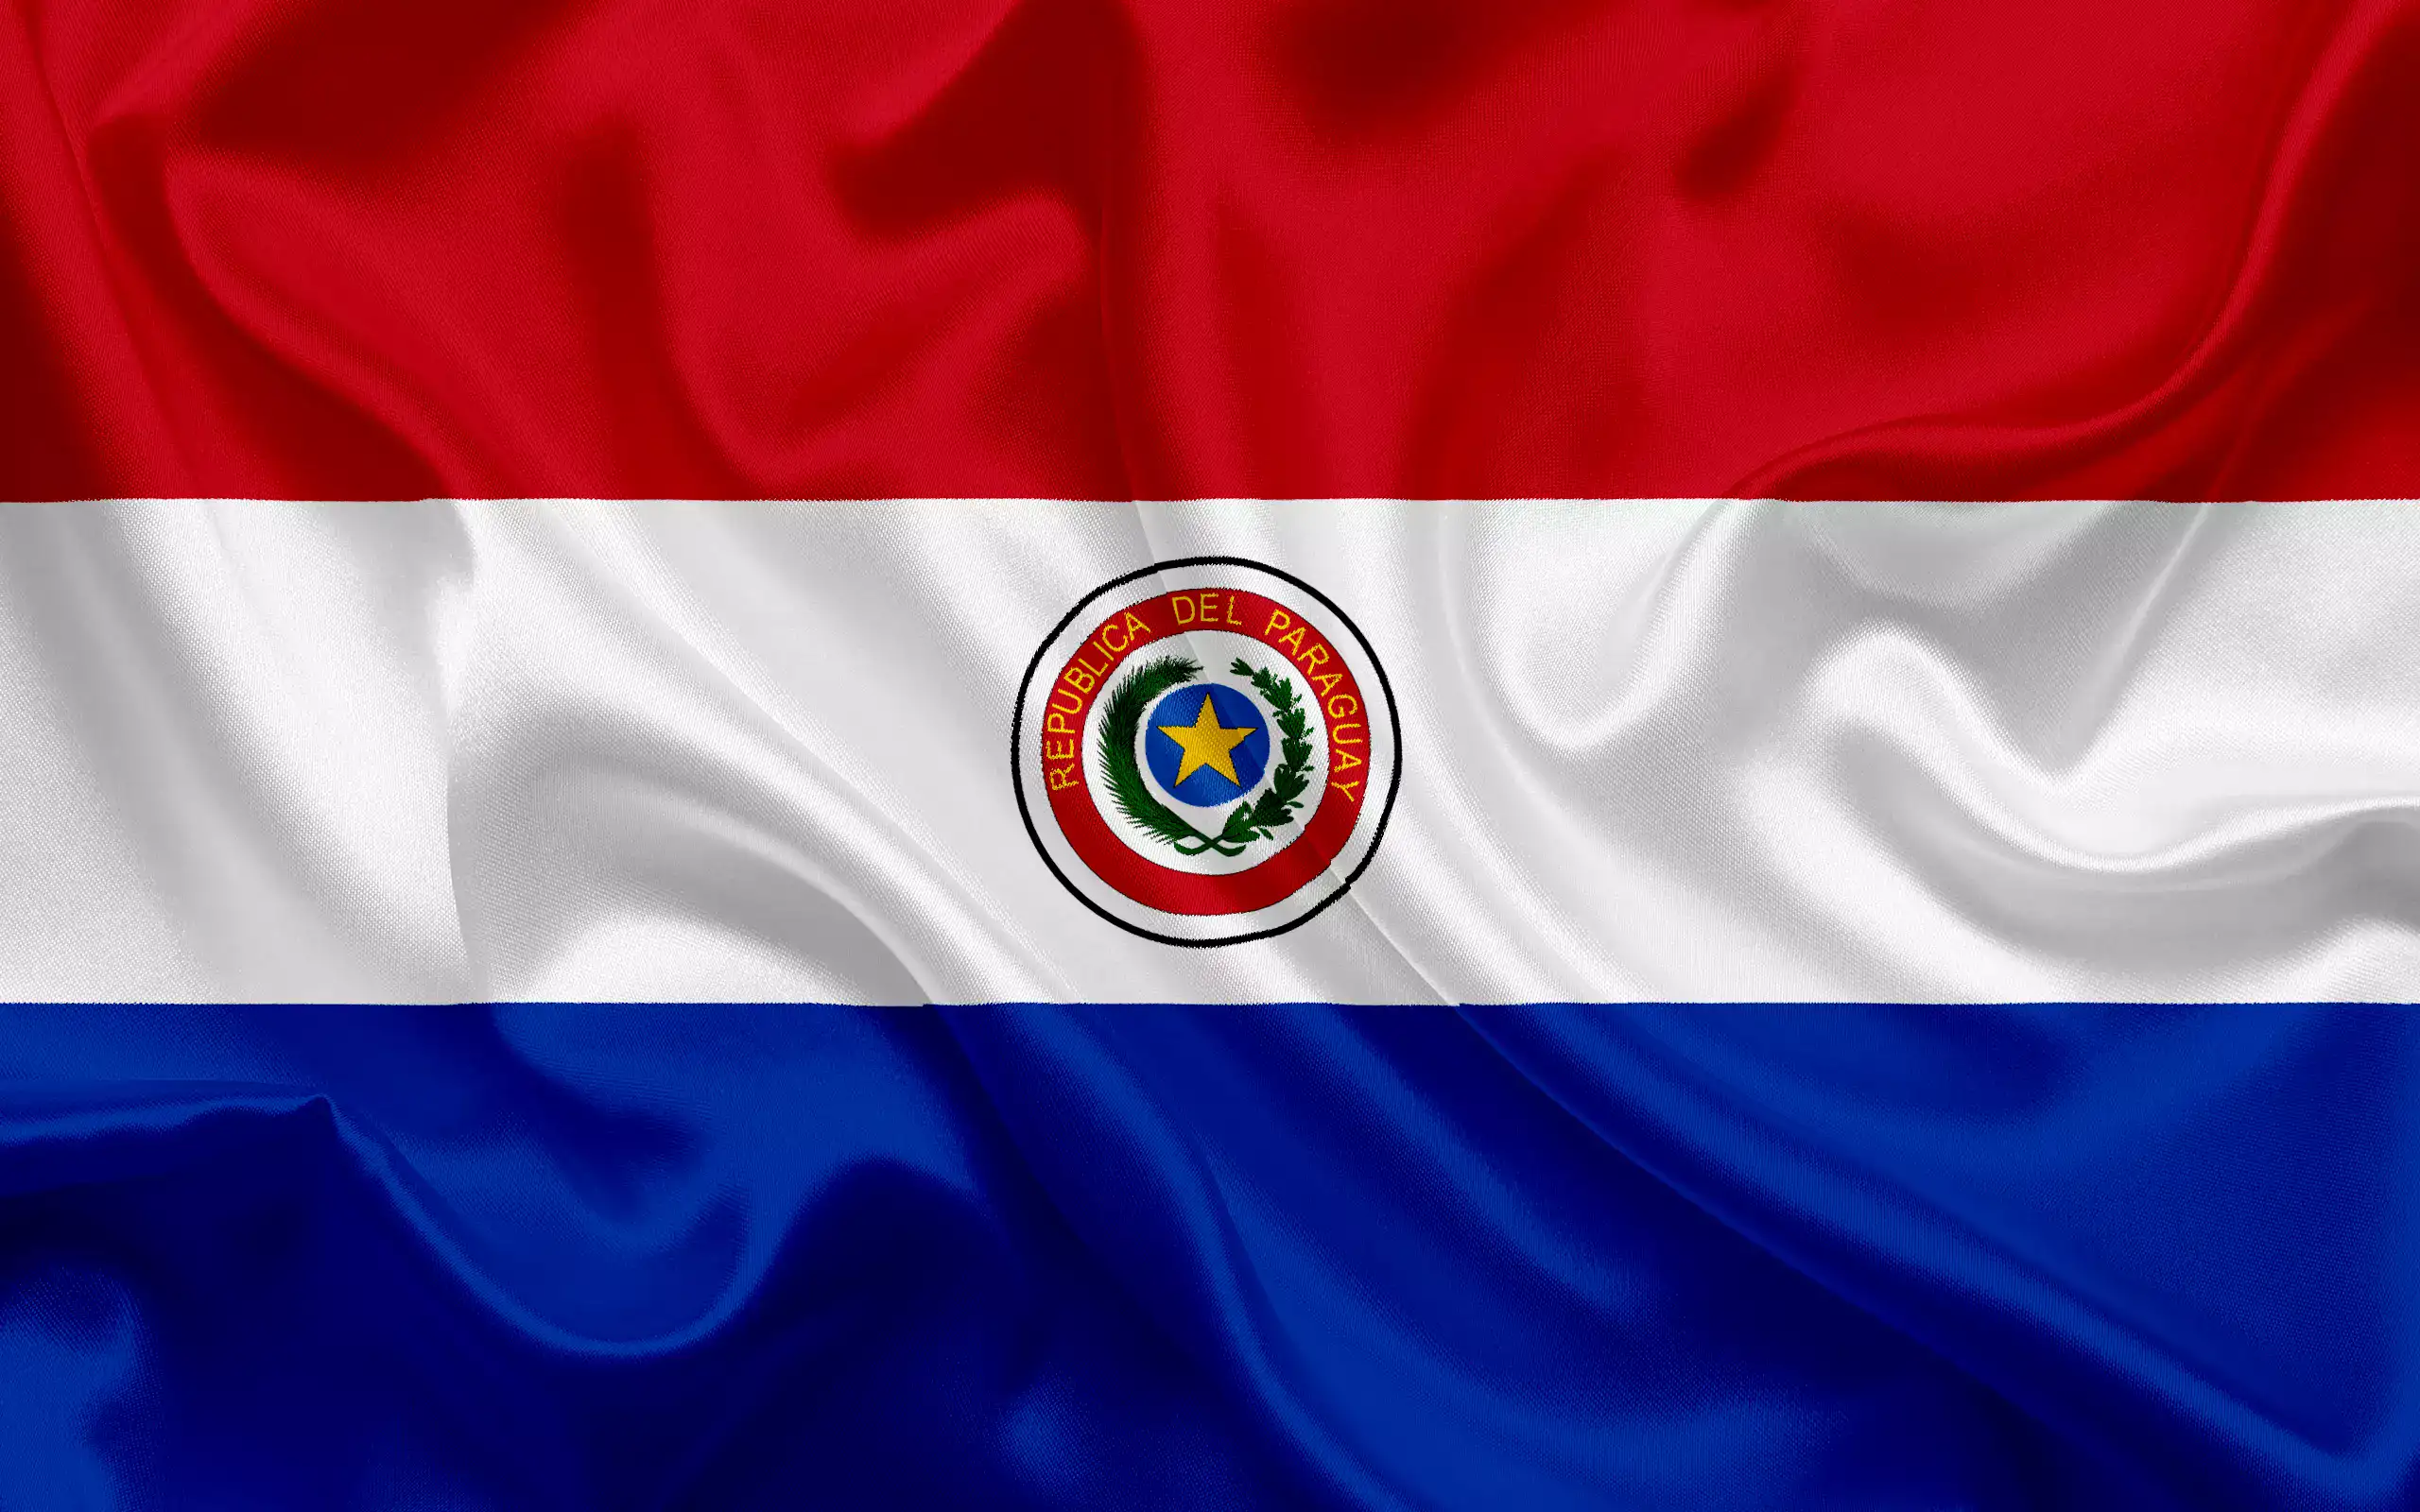 флаг парагвая